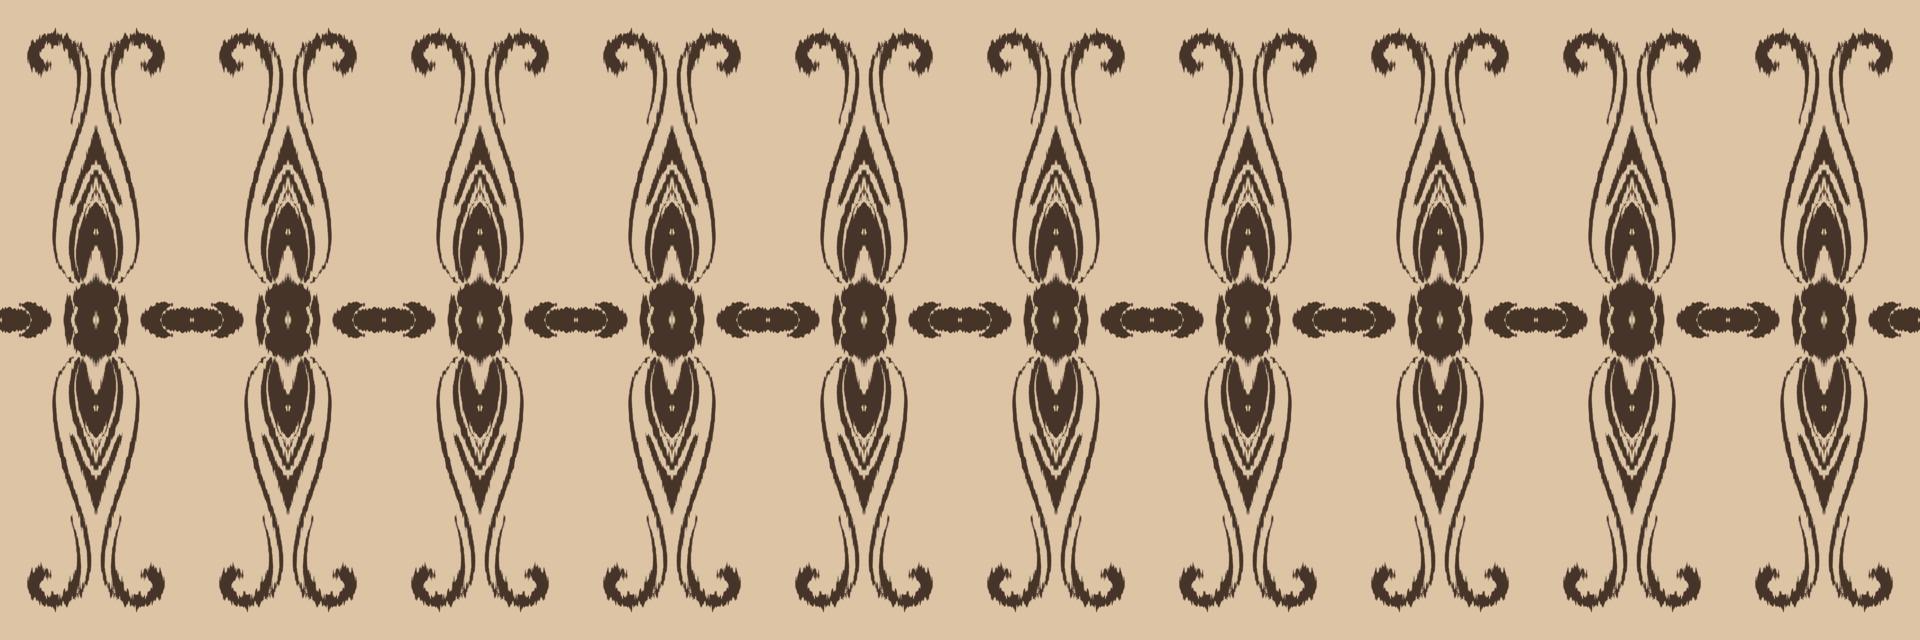 batik textil- motiv filippinare ikat sömlös mönster digital vektor design för skriva ut saree kurti borneo tyg gräns borsta symboler färgrutor eleganta